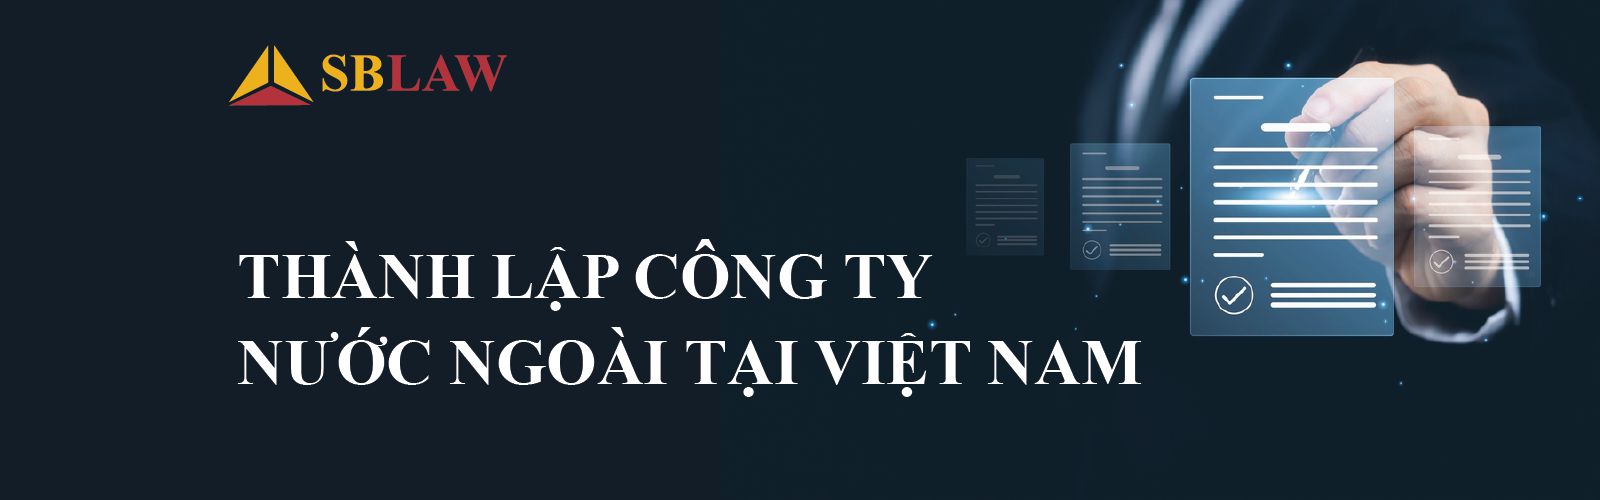 Banne Thành lập công ty nước ngoài tại Việt Nam